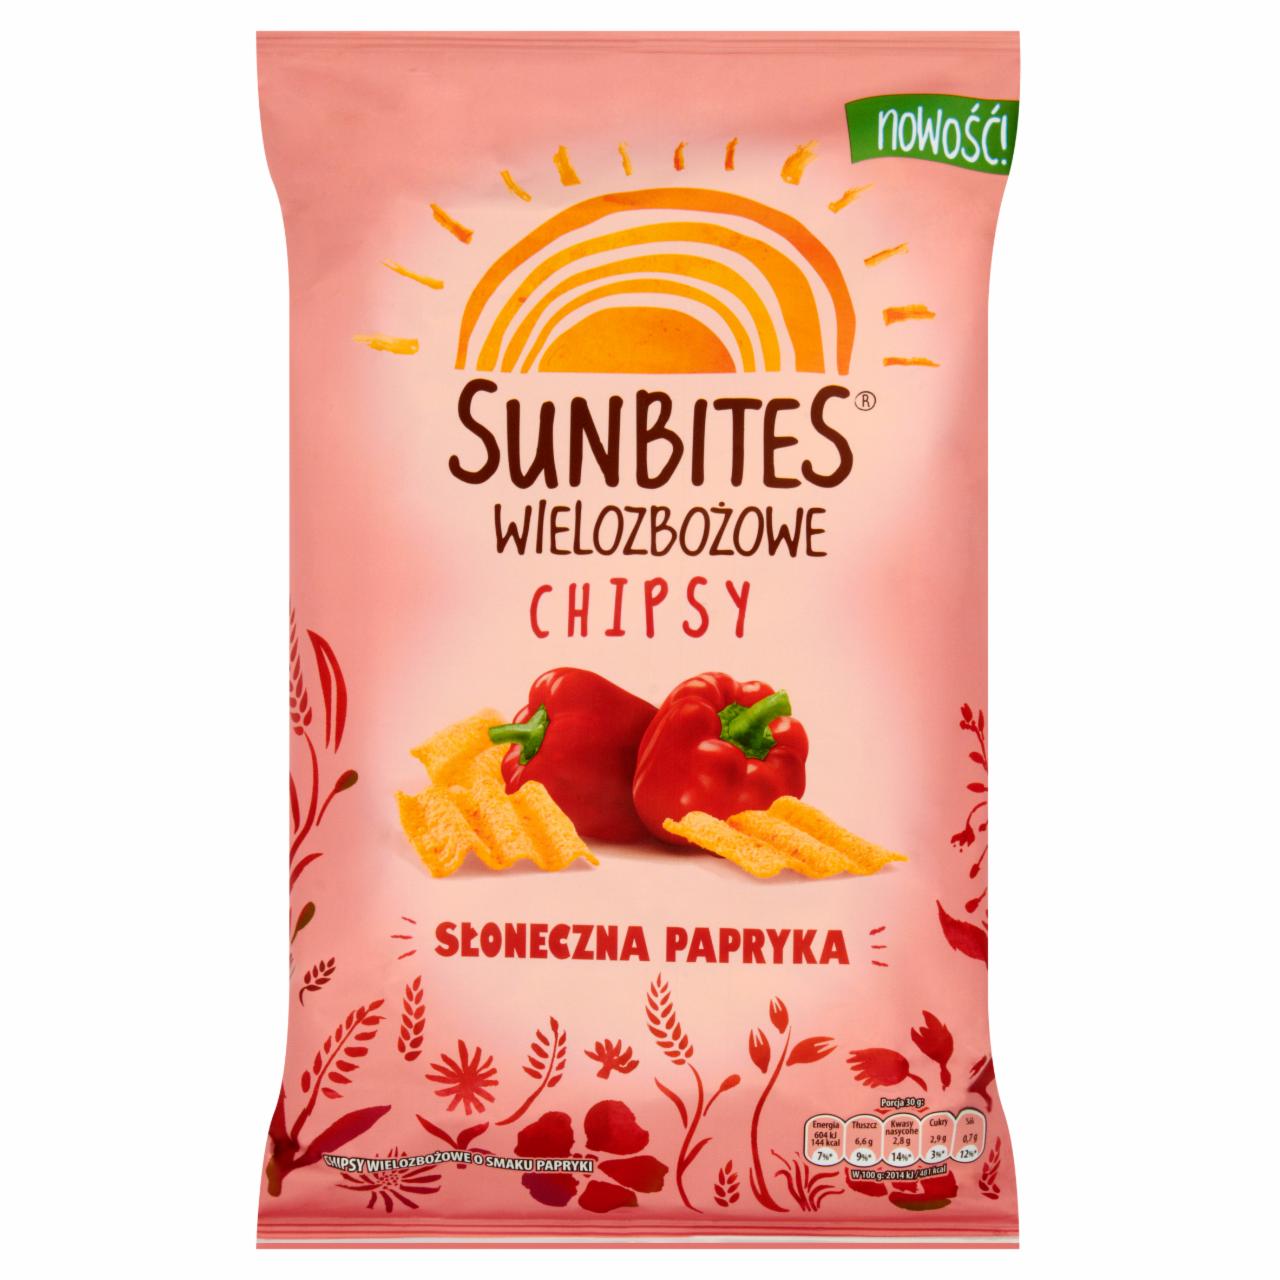 Zdjęcia - Sunbites Wielozbożowe chipsy słoneczna papryka 110 g